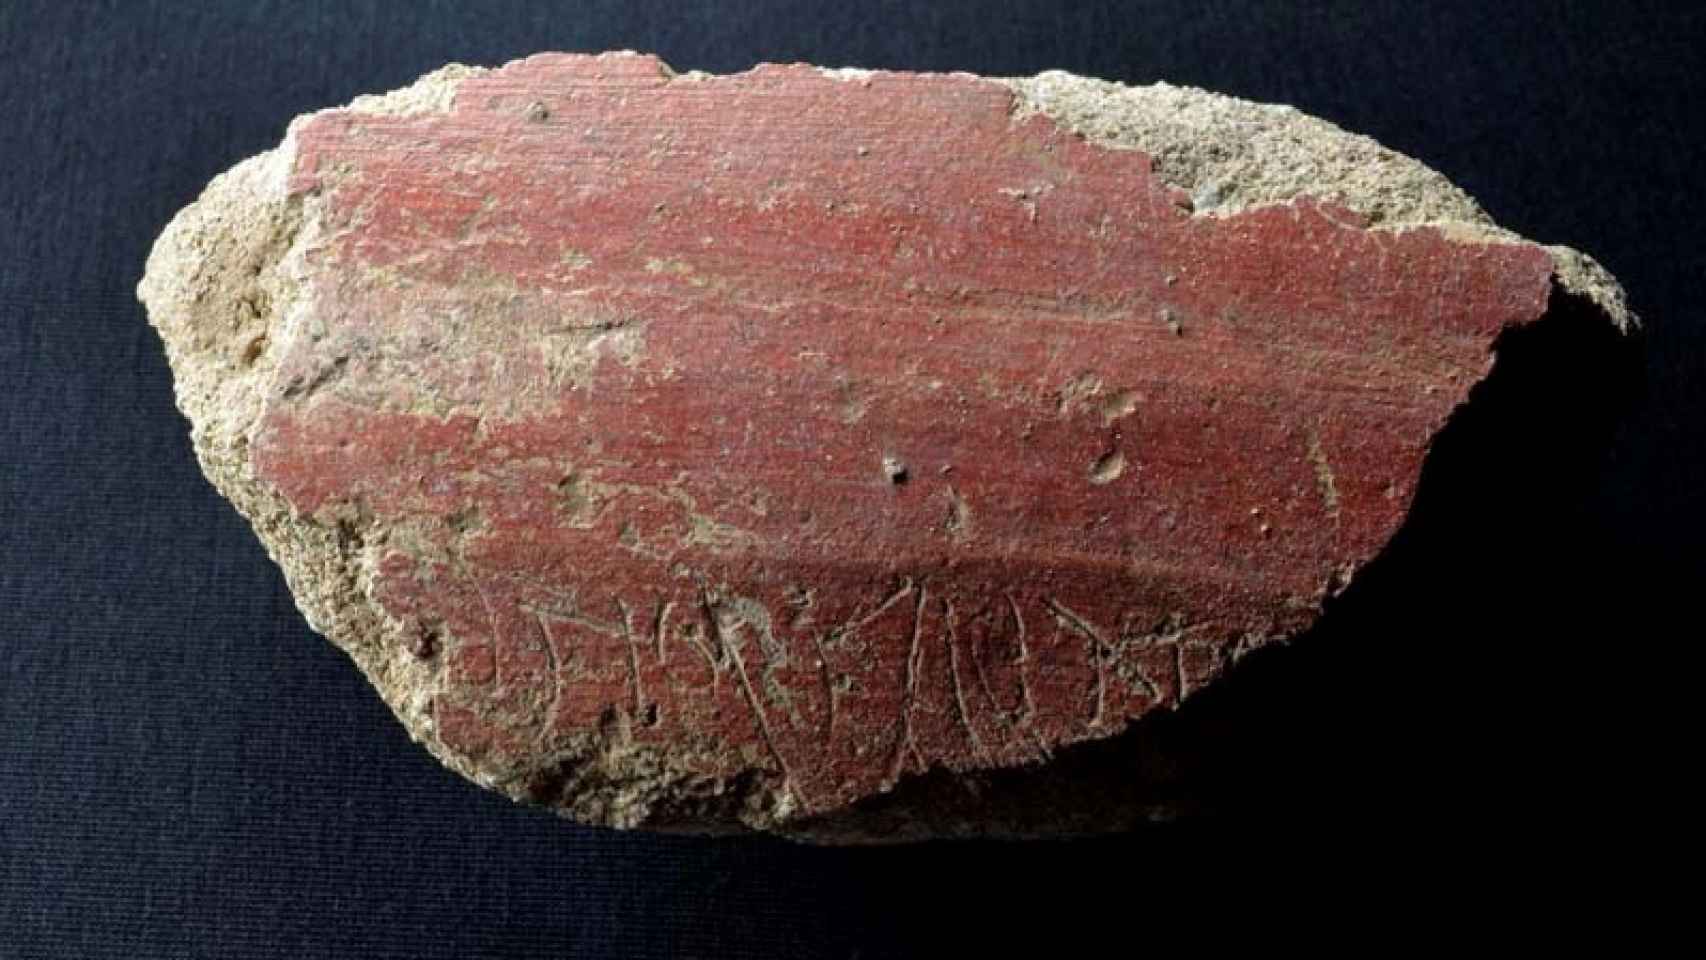 Fragmento de estuco rojo datado en el siglo I d.C y encontrado en Mérida en el que puede leerse la inscripción ...Ntio fellat, un grafiti obsceno sobre felaciones.